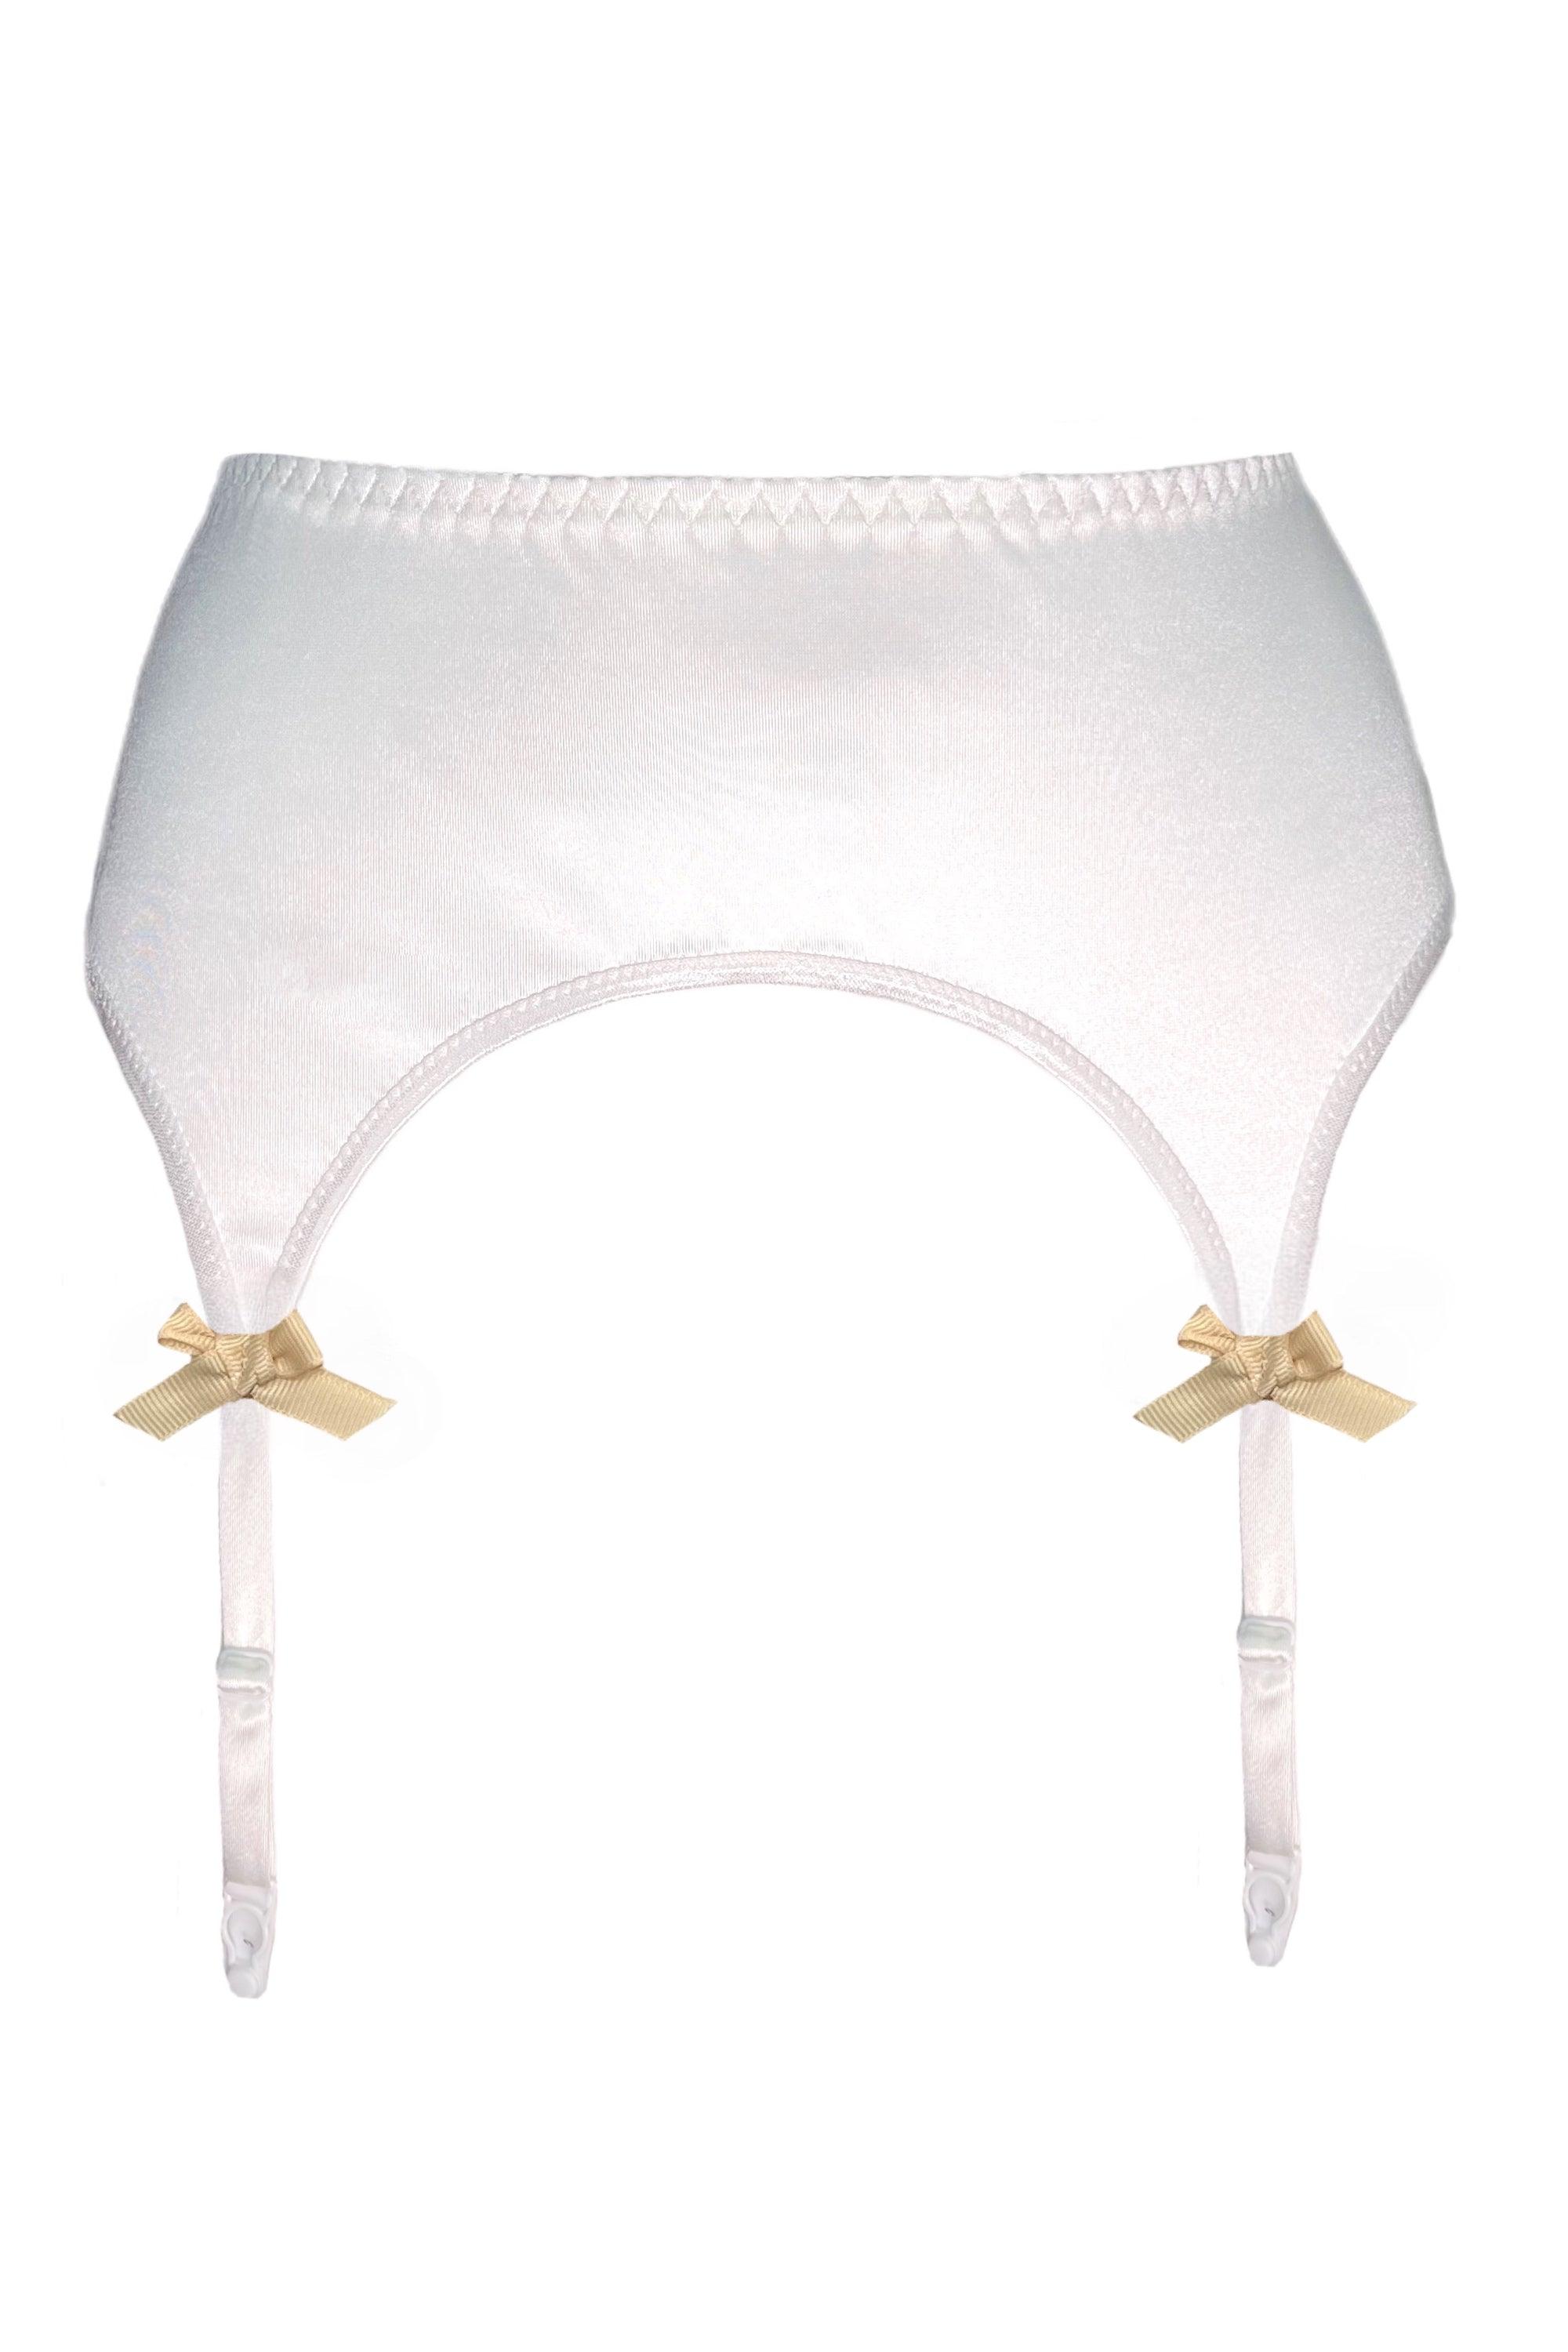 Valessa Gloss Ivory garter belt - yesUndress